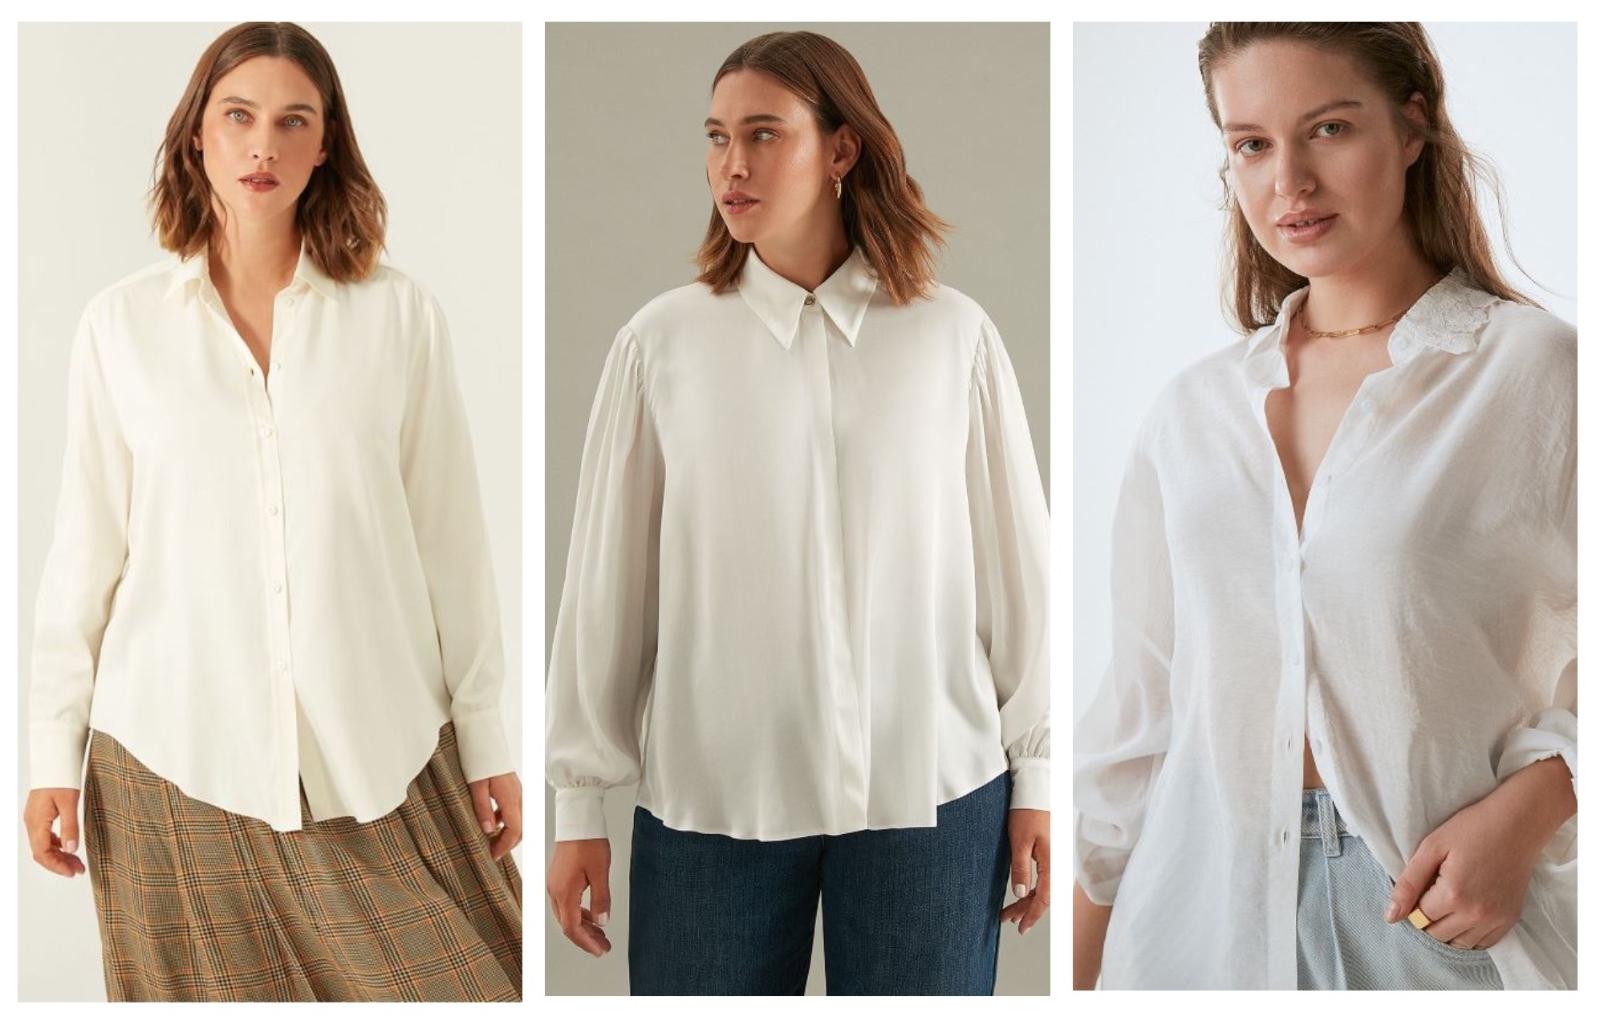 Рубашка из матового атласа / Свободная рубашка из струящегося вискозного шелка / Блуза оверсайз из воздушной органзы